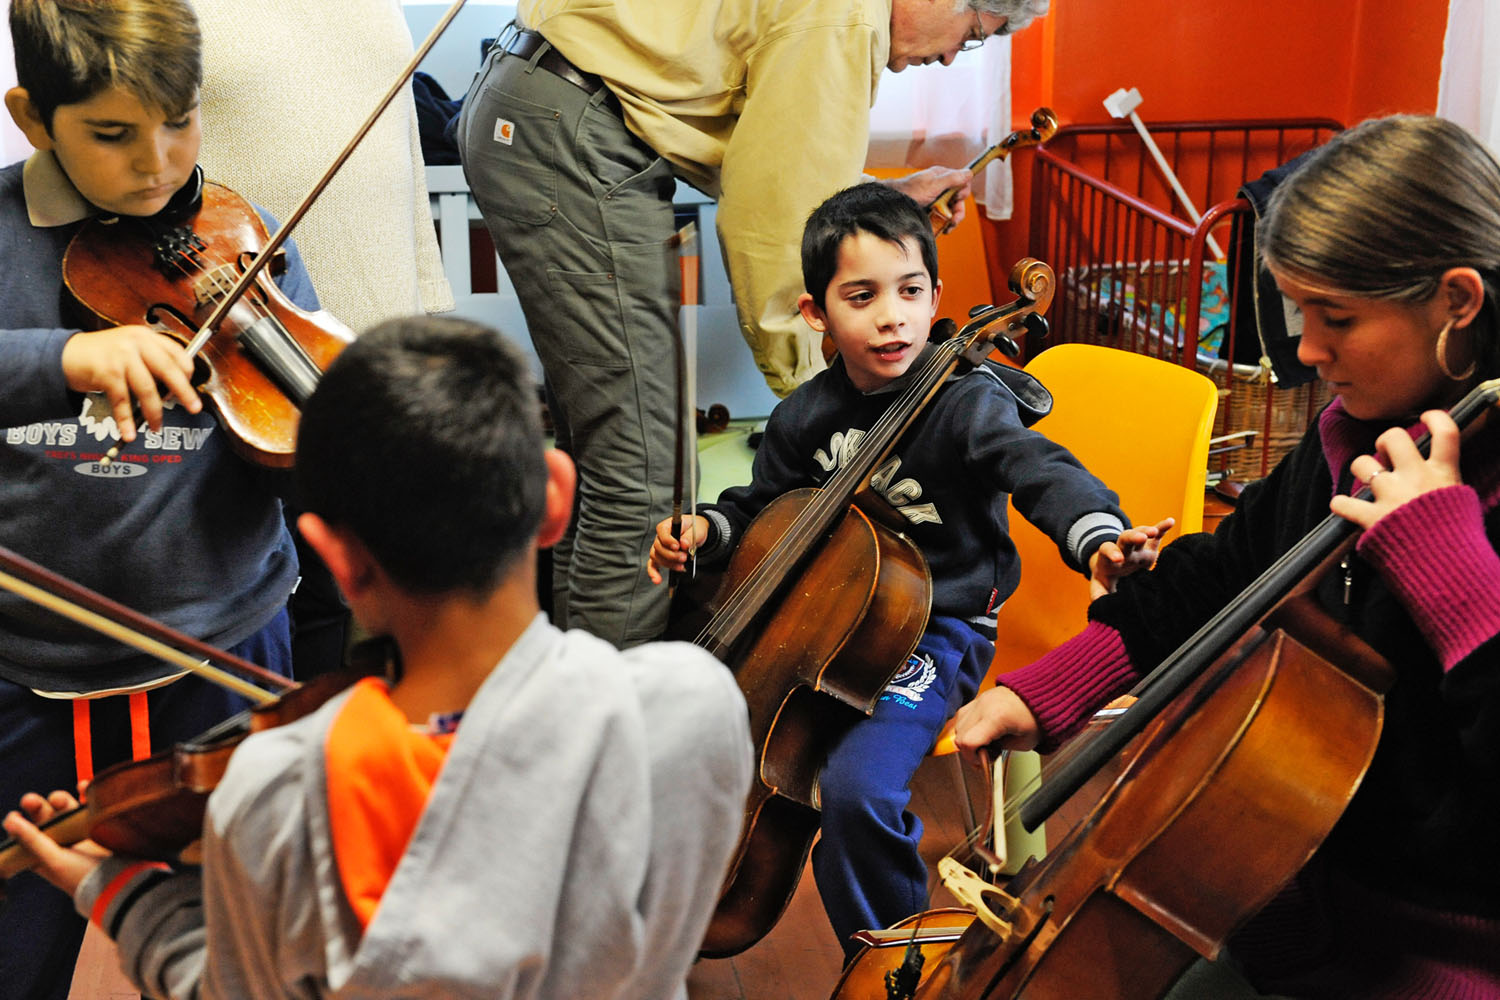 Ezek a gyerekek nem roma muzsikuscsaládokból jönnek, általában nulláról kezdik a zenélést